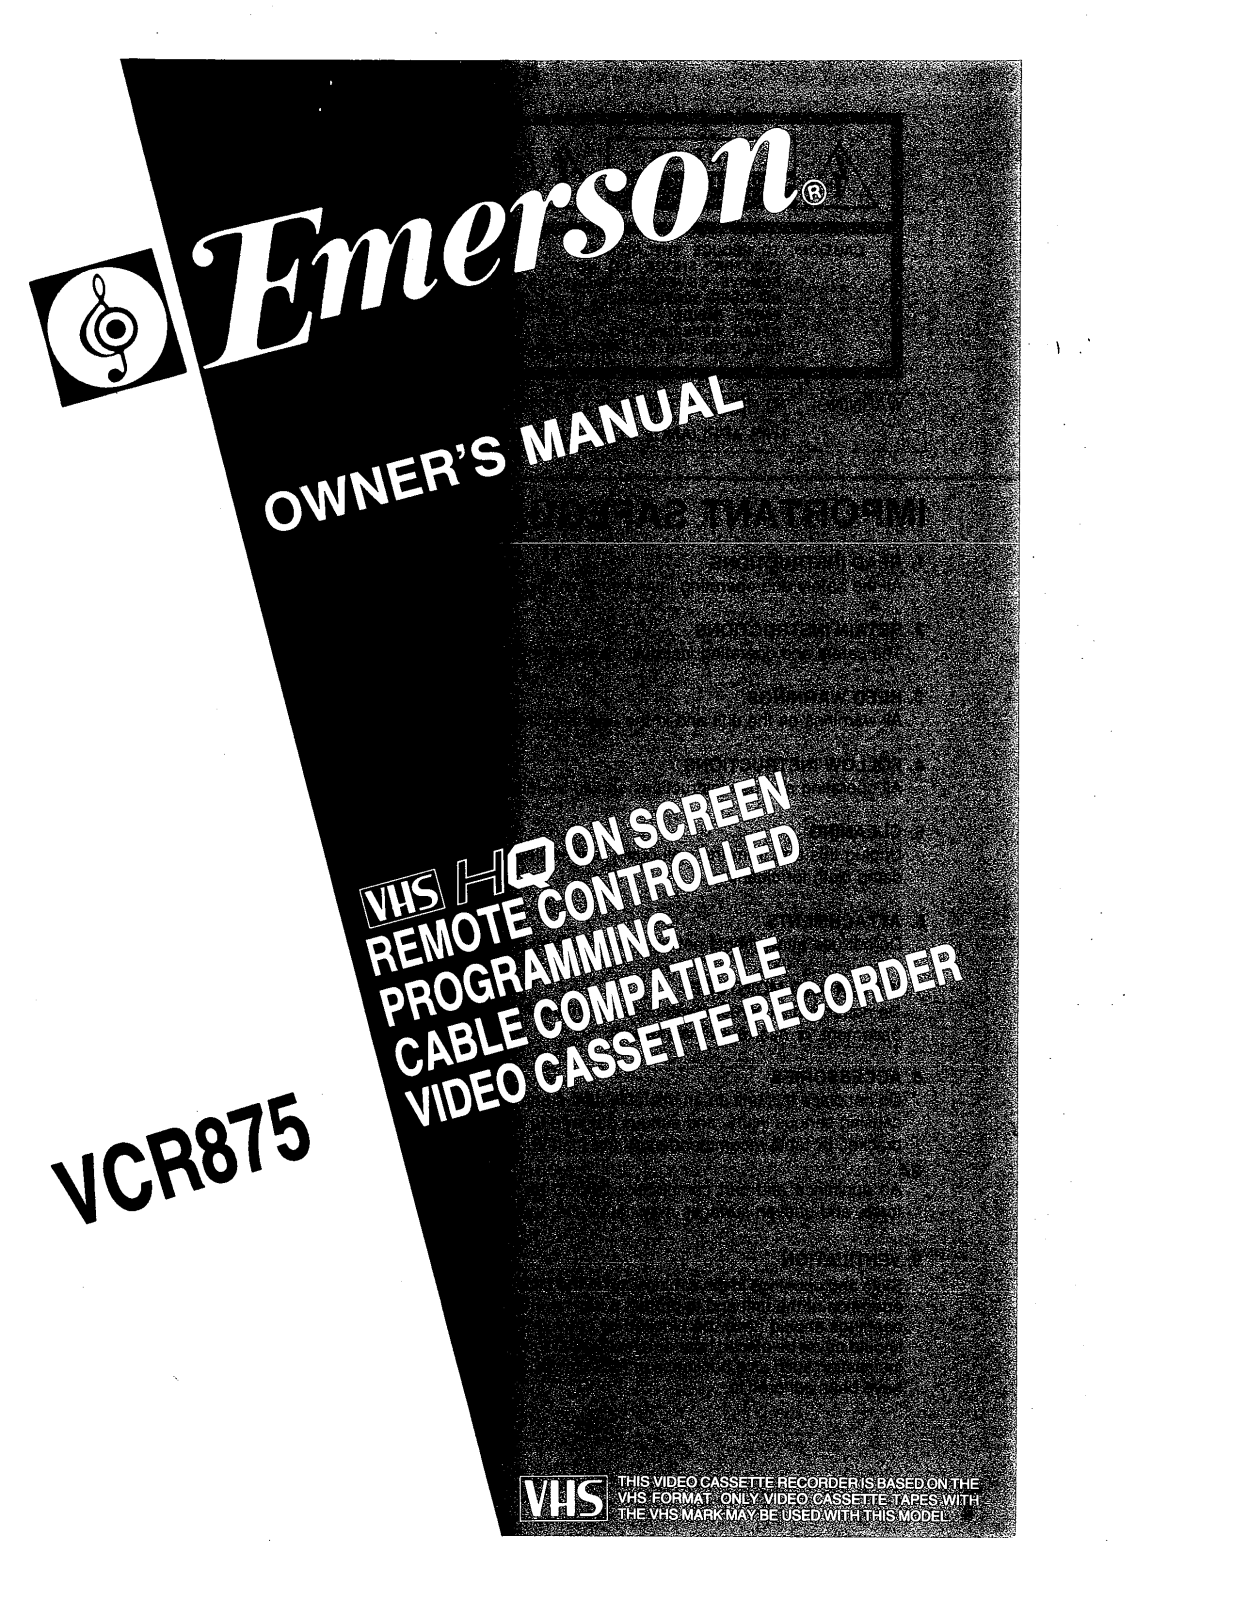 EMERSON VCR875 User Manual